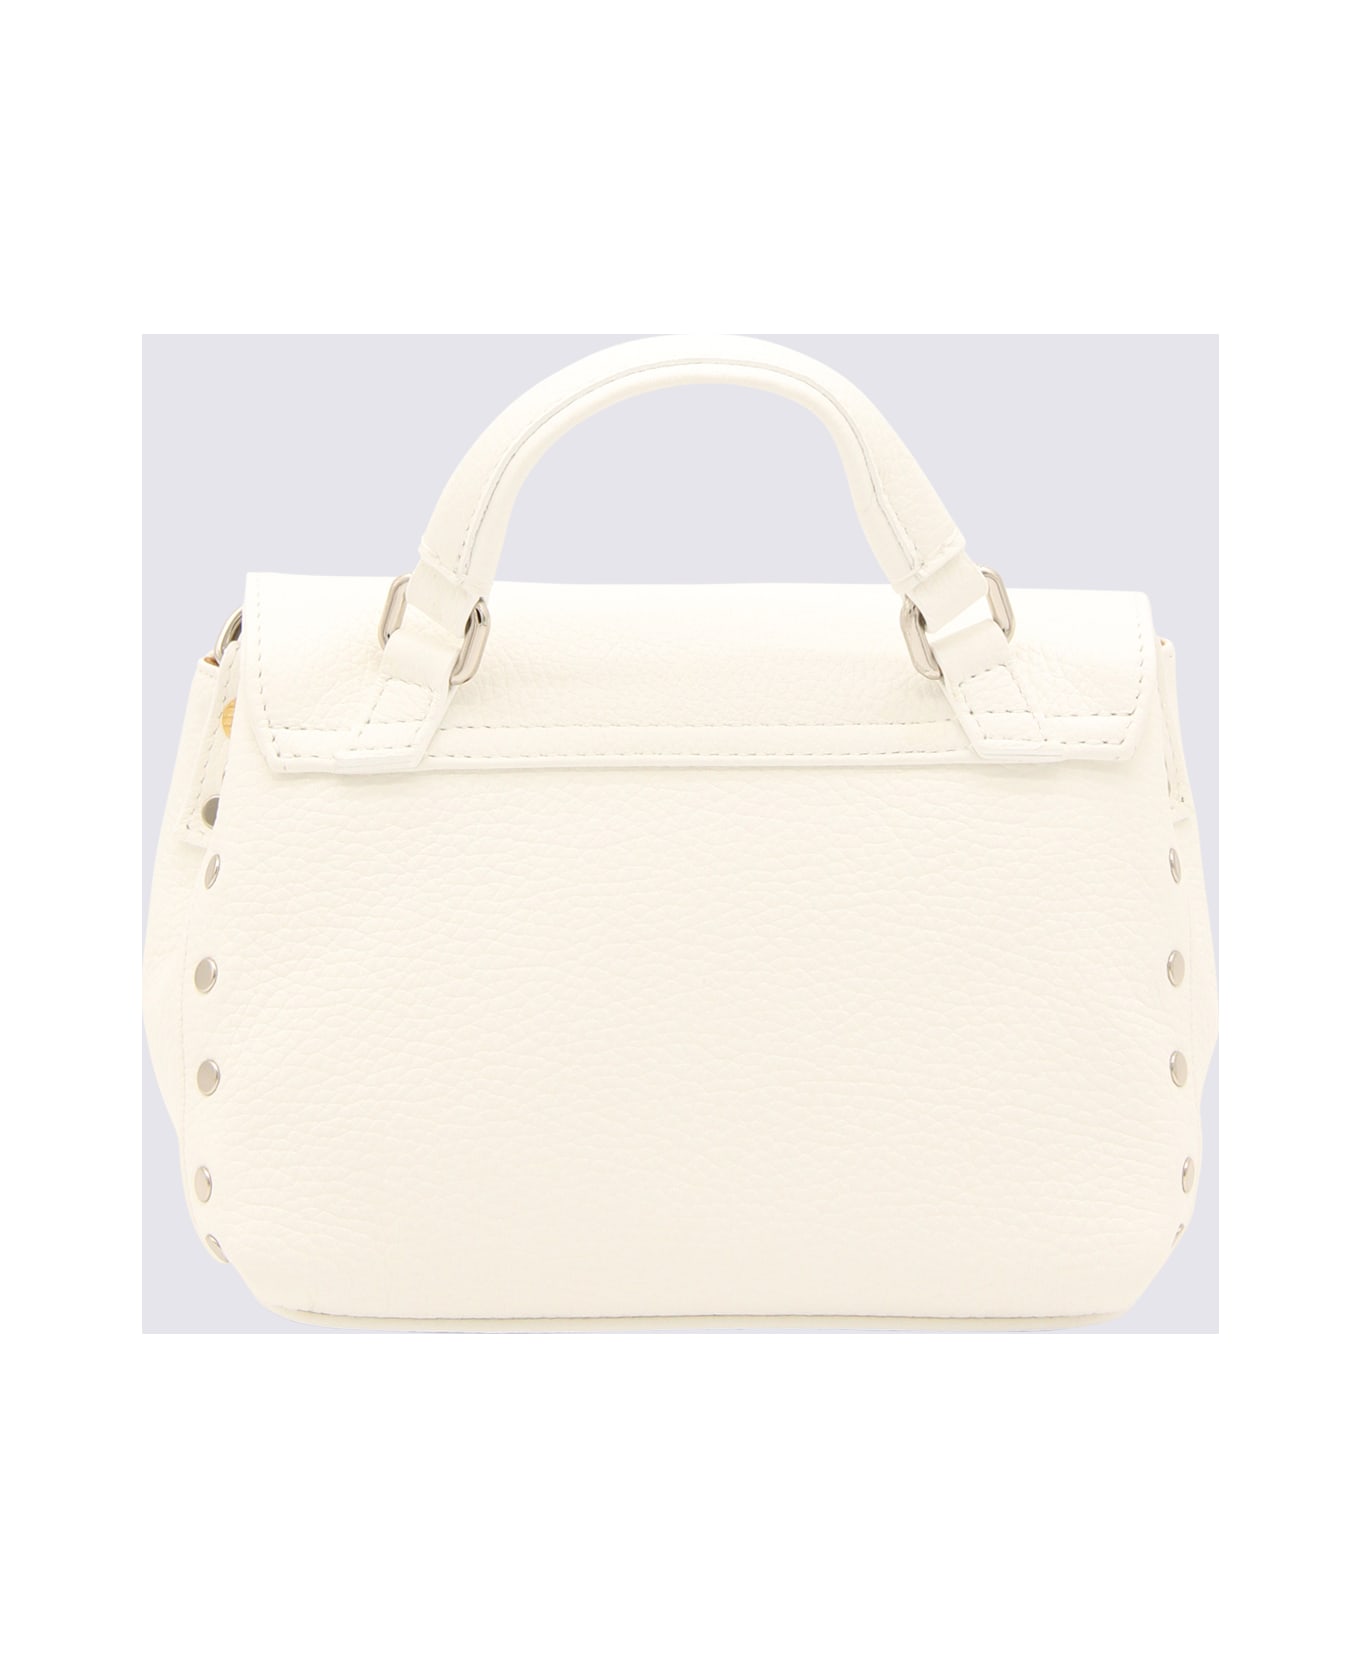 Zanellato White Leather Postina S Top Handle Bag - White